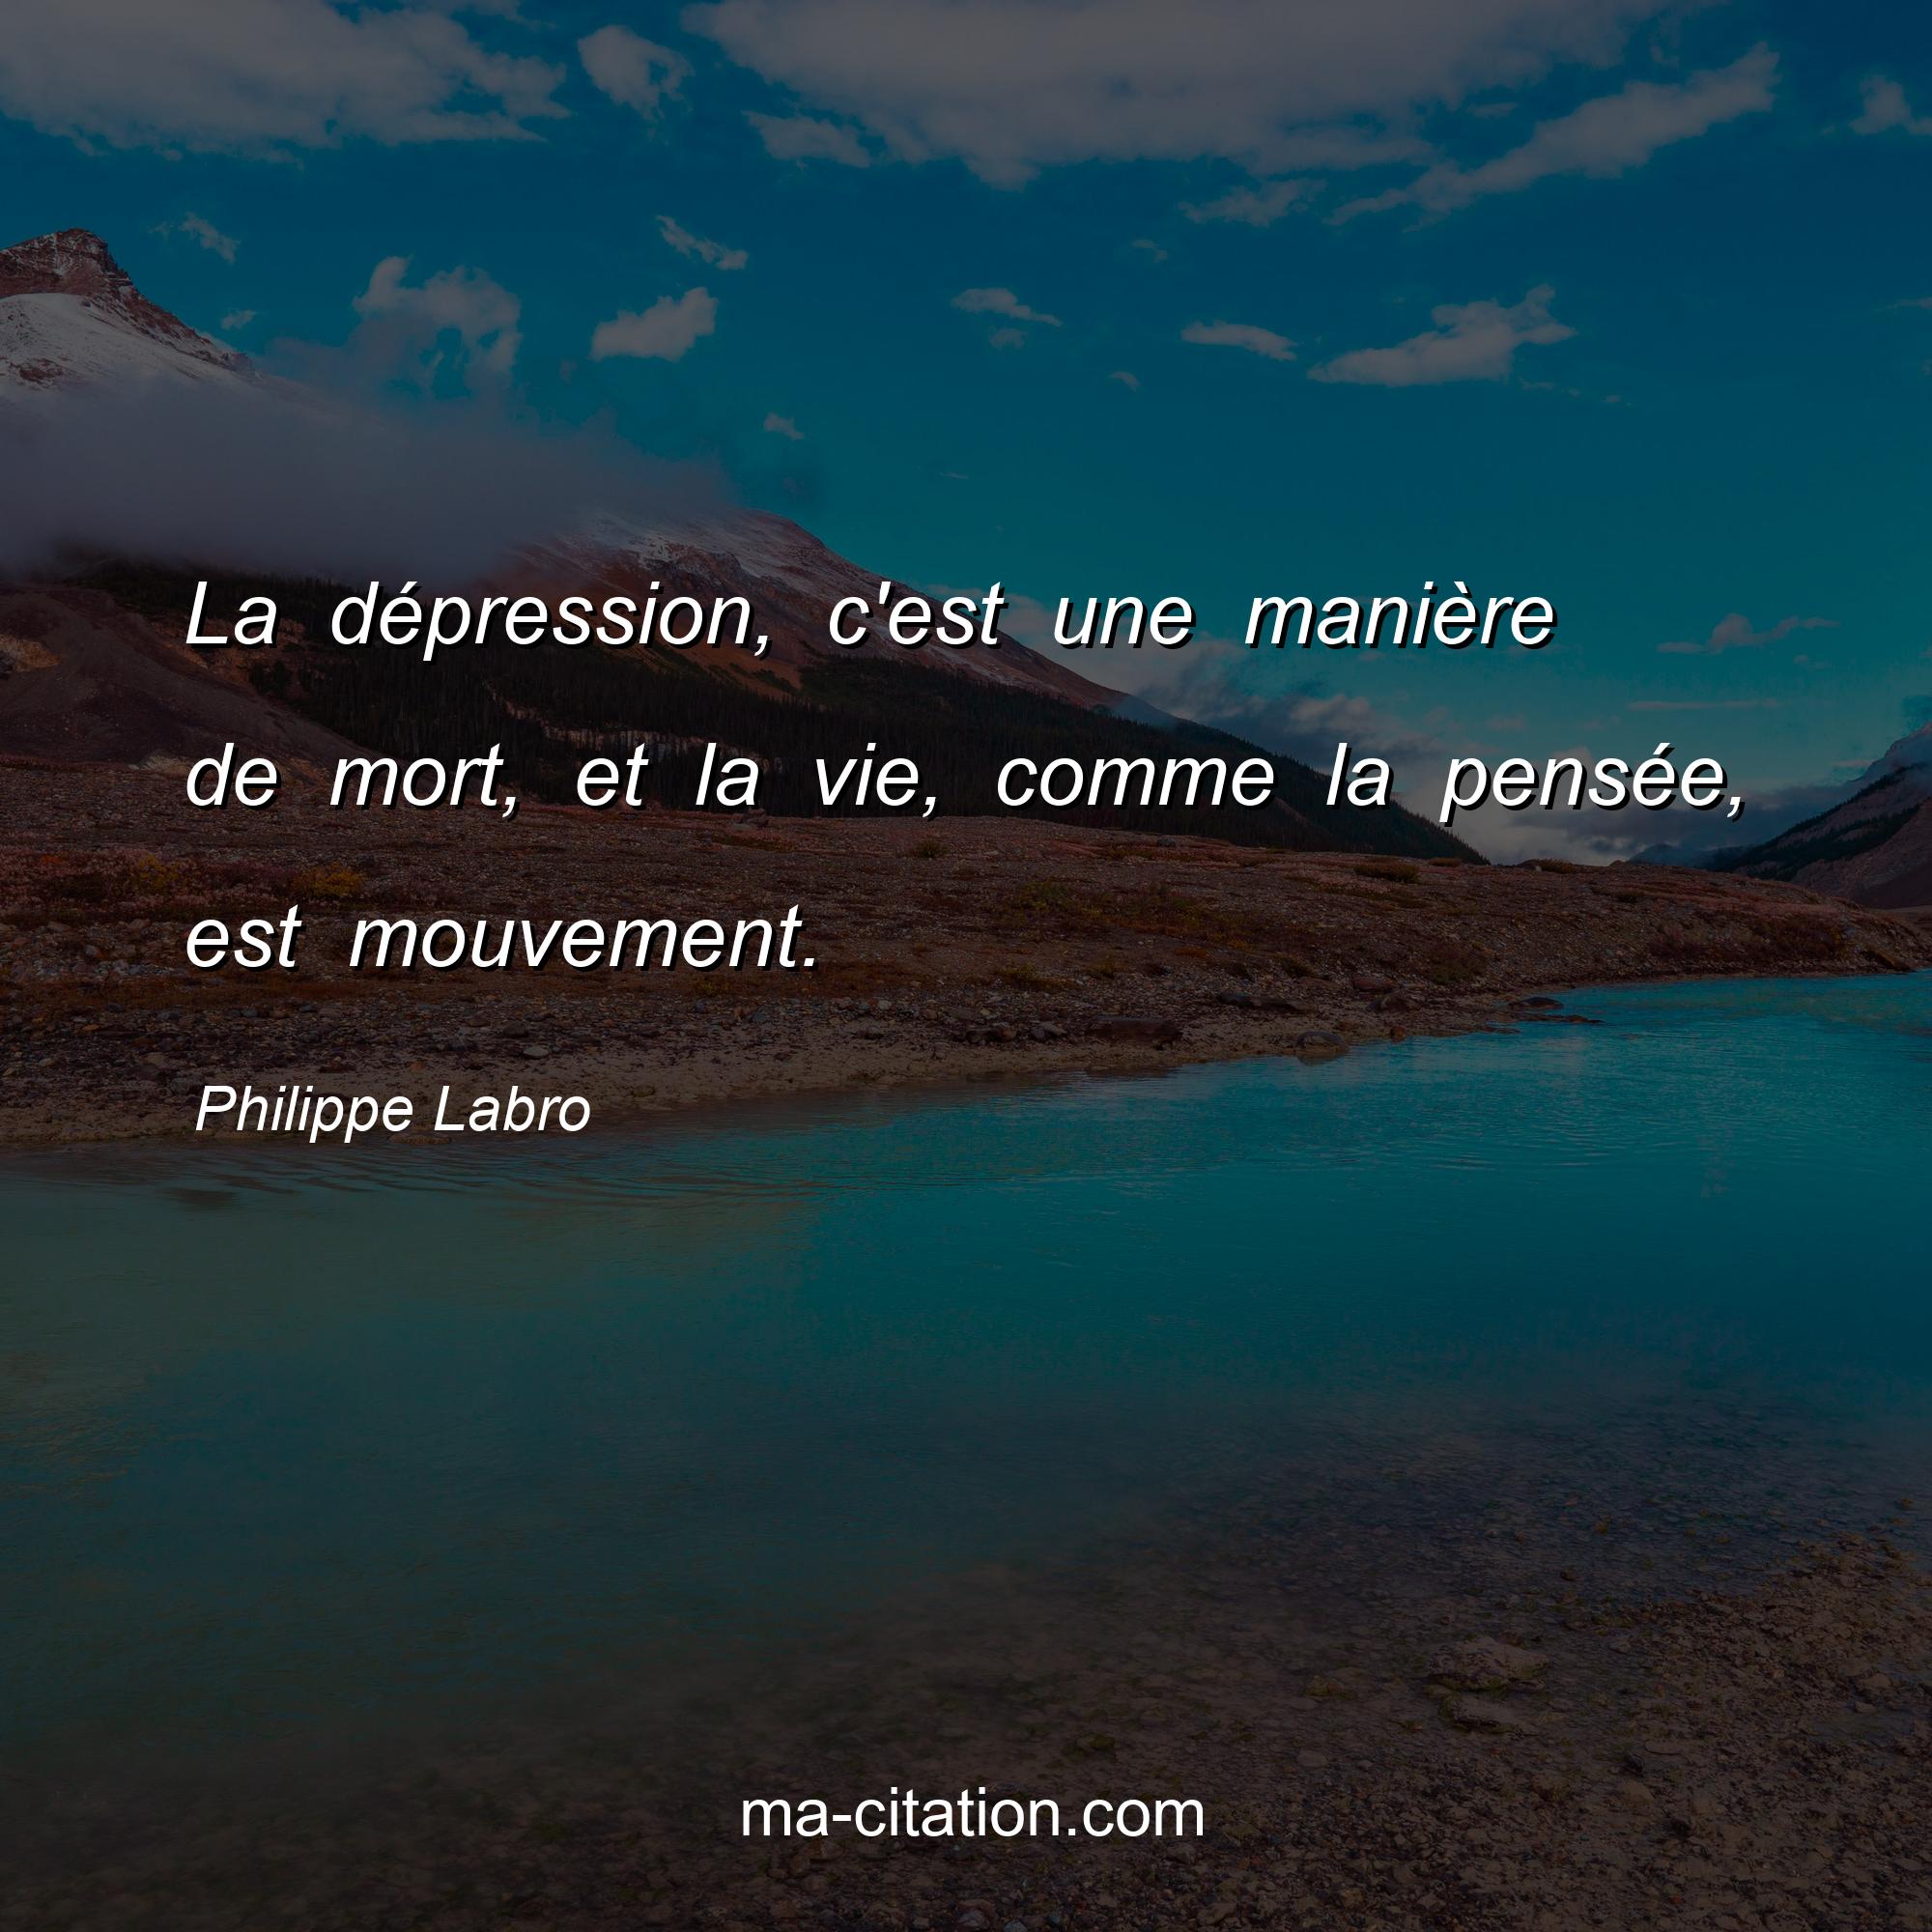 Philippe Labro : La dépression, c'est une manière de mort, et la vie, comme la pensée, est mouvement.